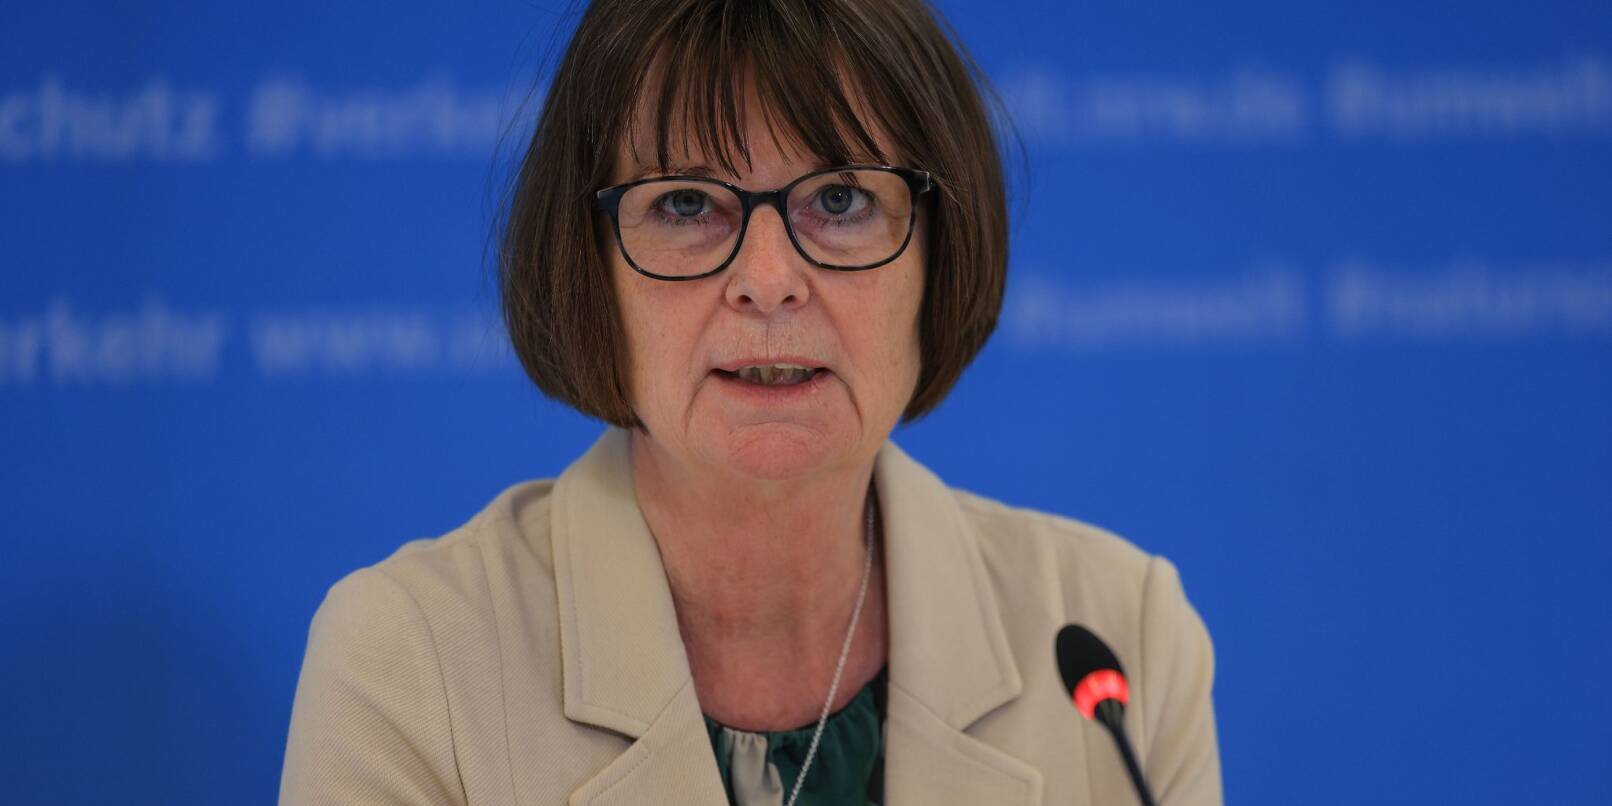 Hessens Umweltministerin Priska Hinz (Grüne) spricht auf einer Pressekonferenz.